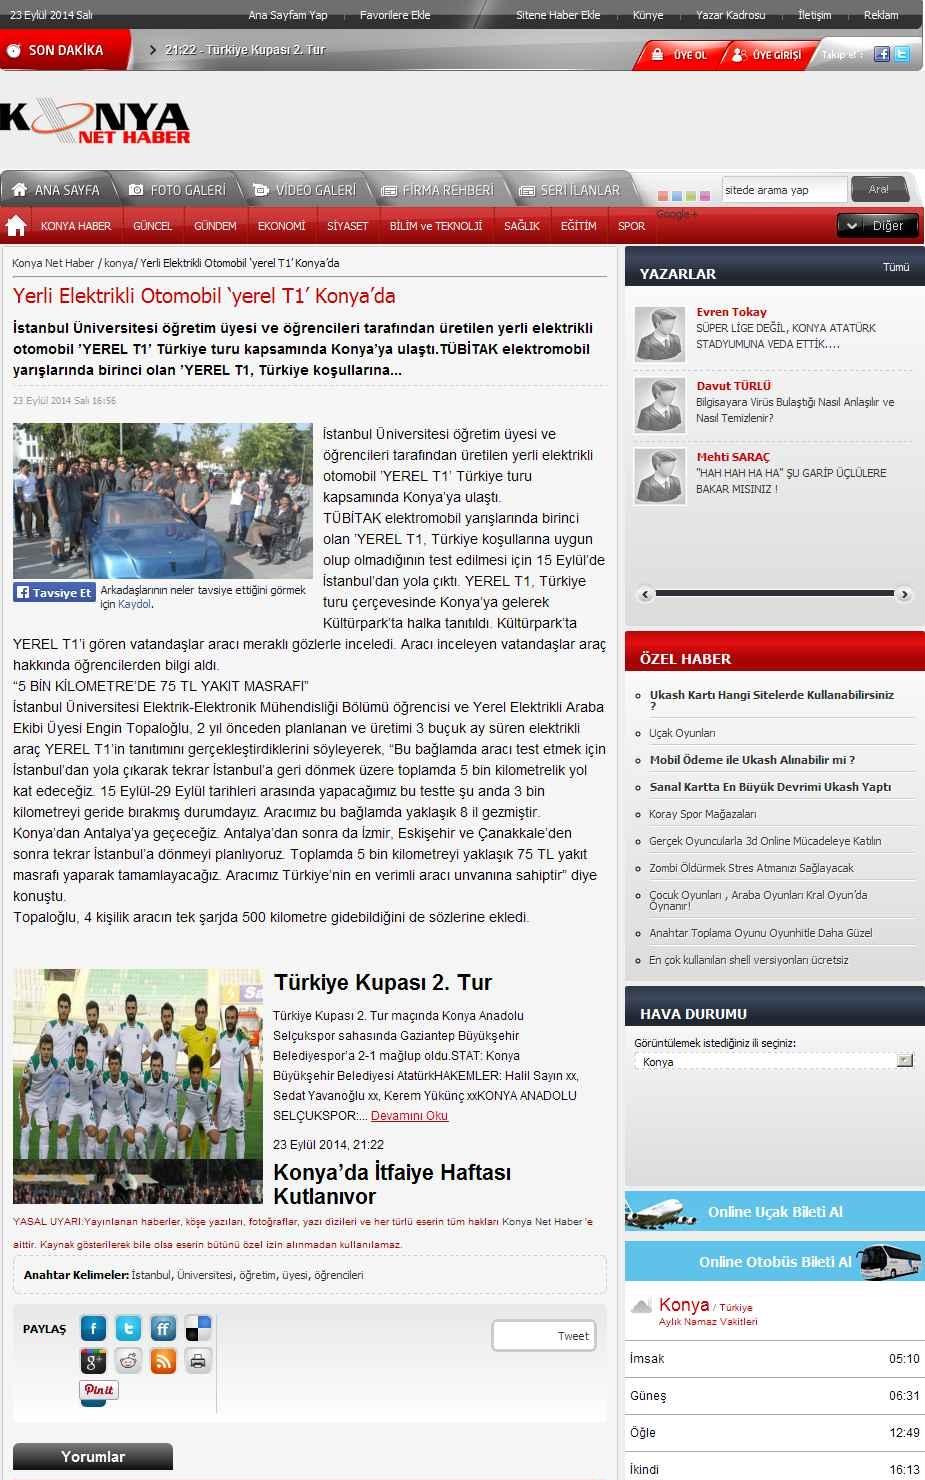 Portal Adres YERLI ELEKTRIKLI OTOMOBIL `YEREL T1 KONYA DA : www.konya.net.